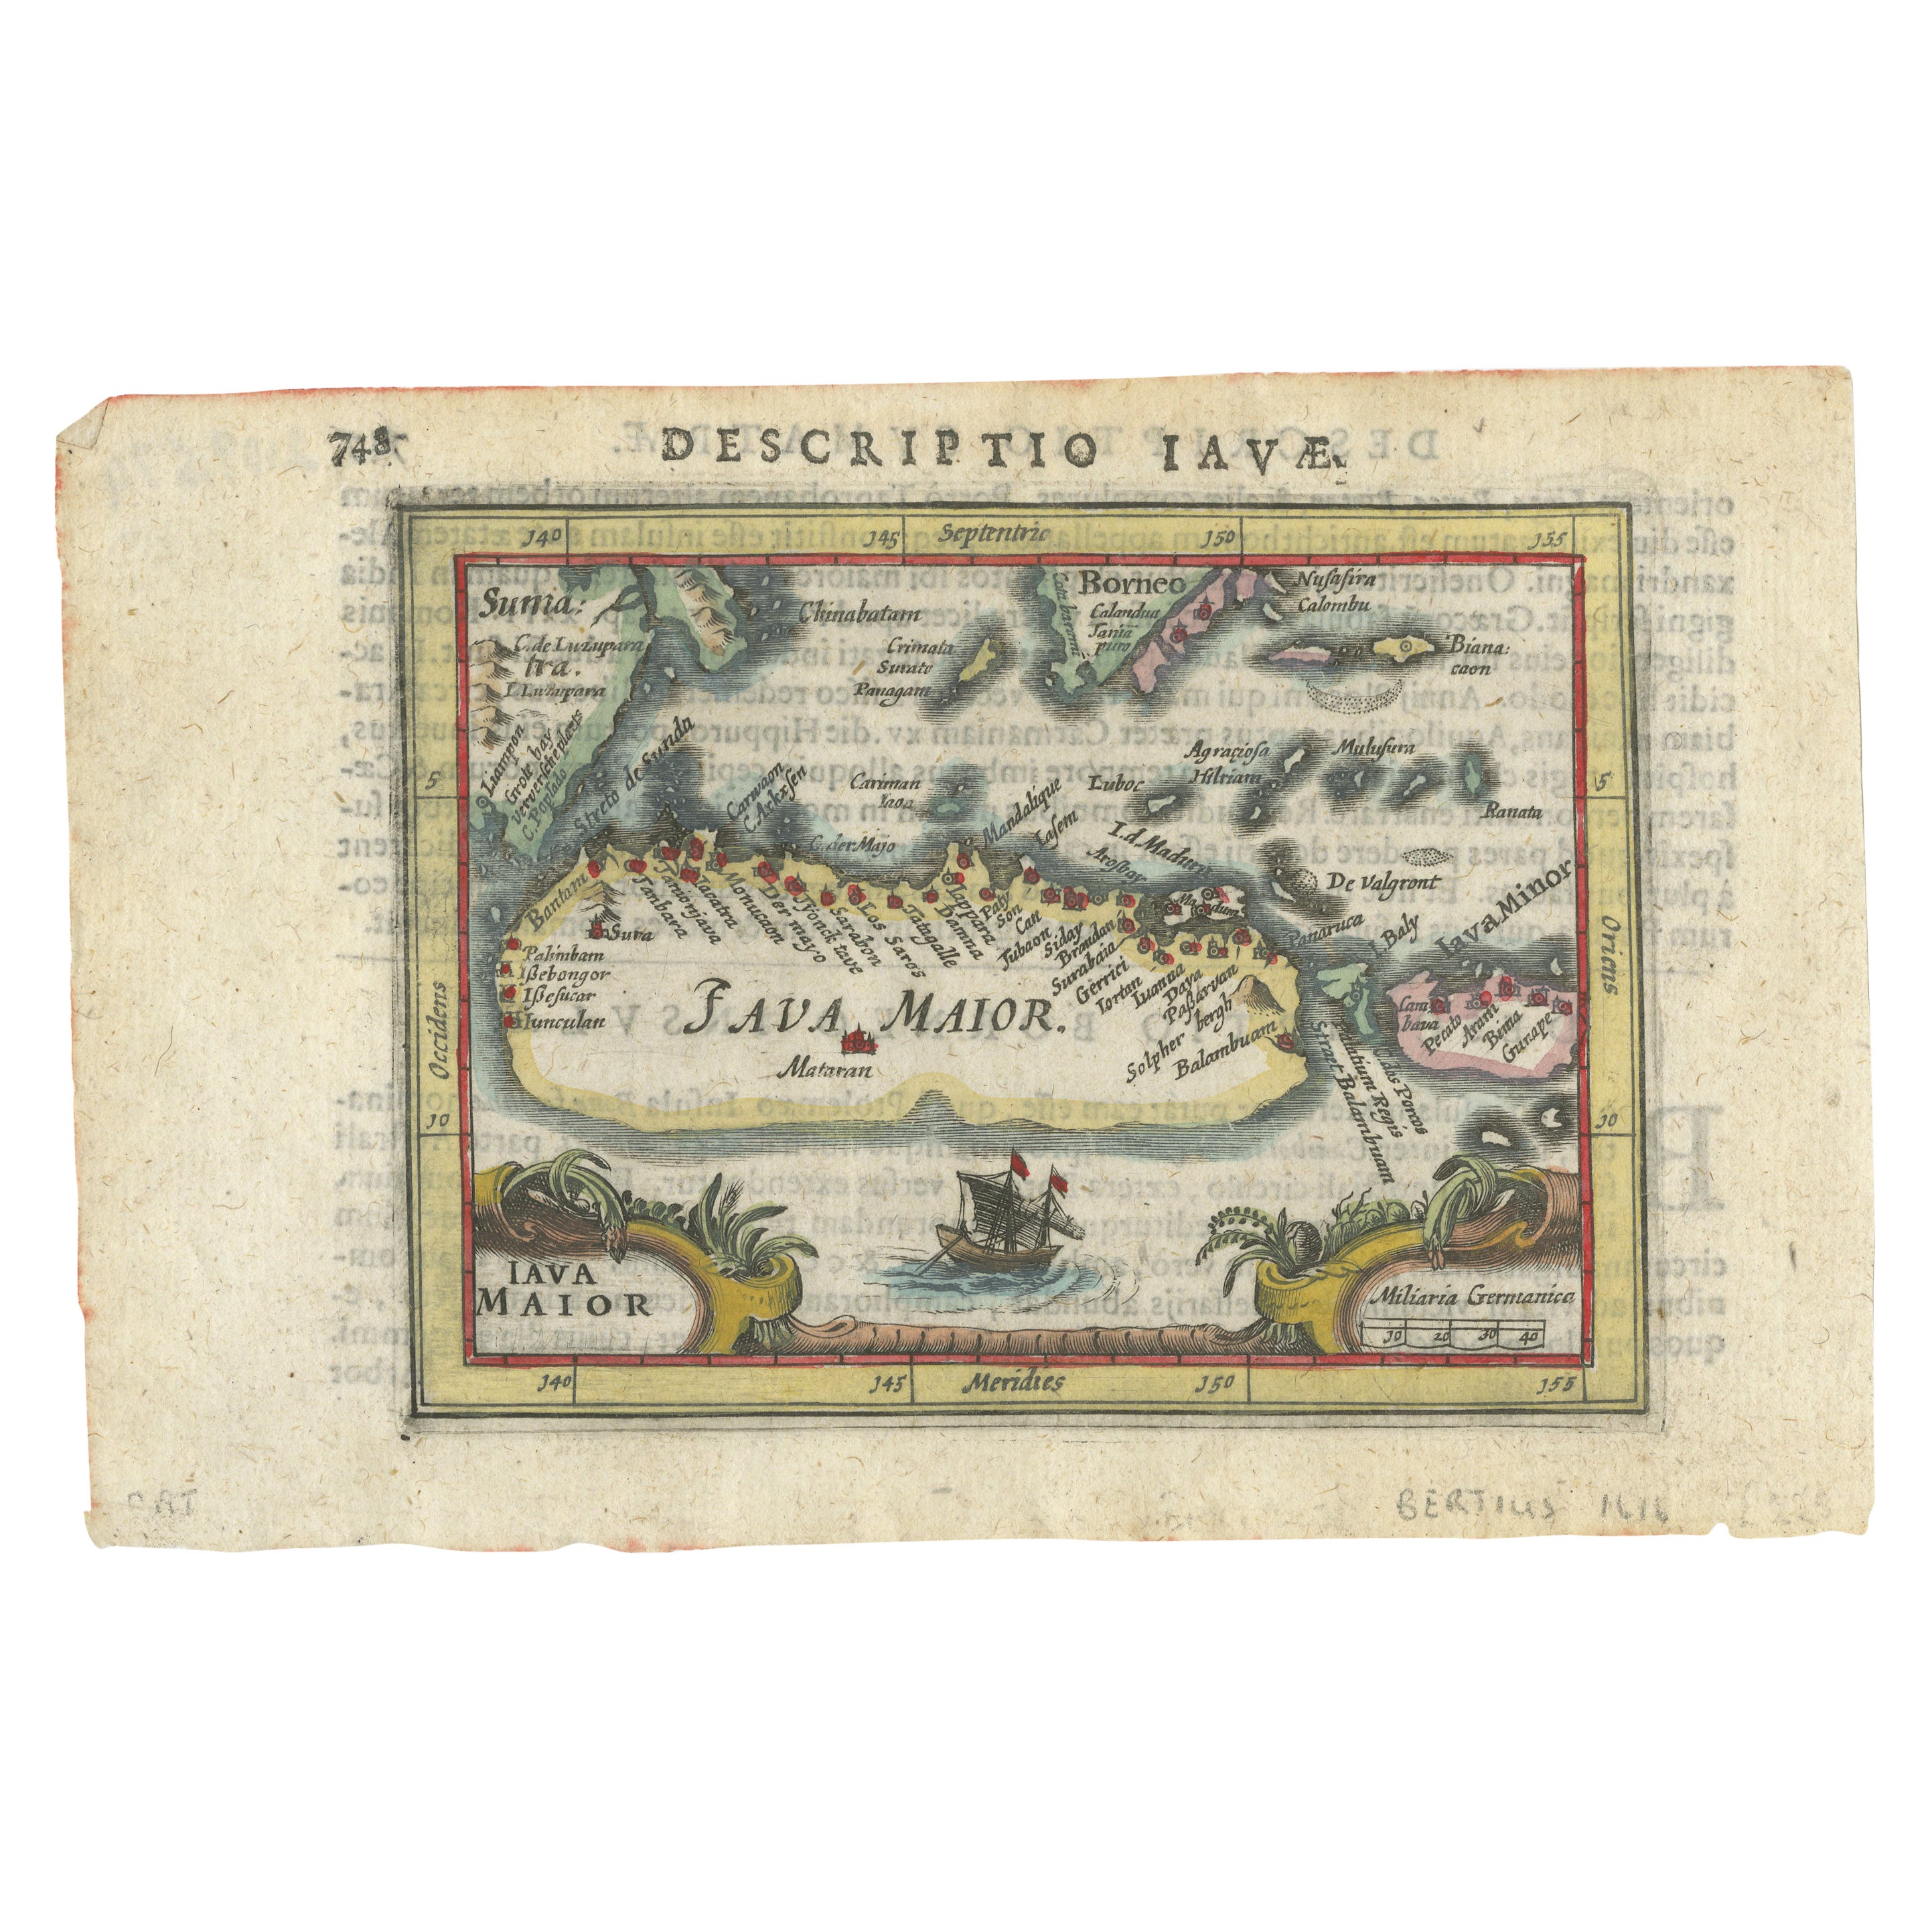 Rare 16th Century Original Handcolored Miniature Map of Java, Indonesia, 1616